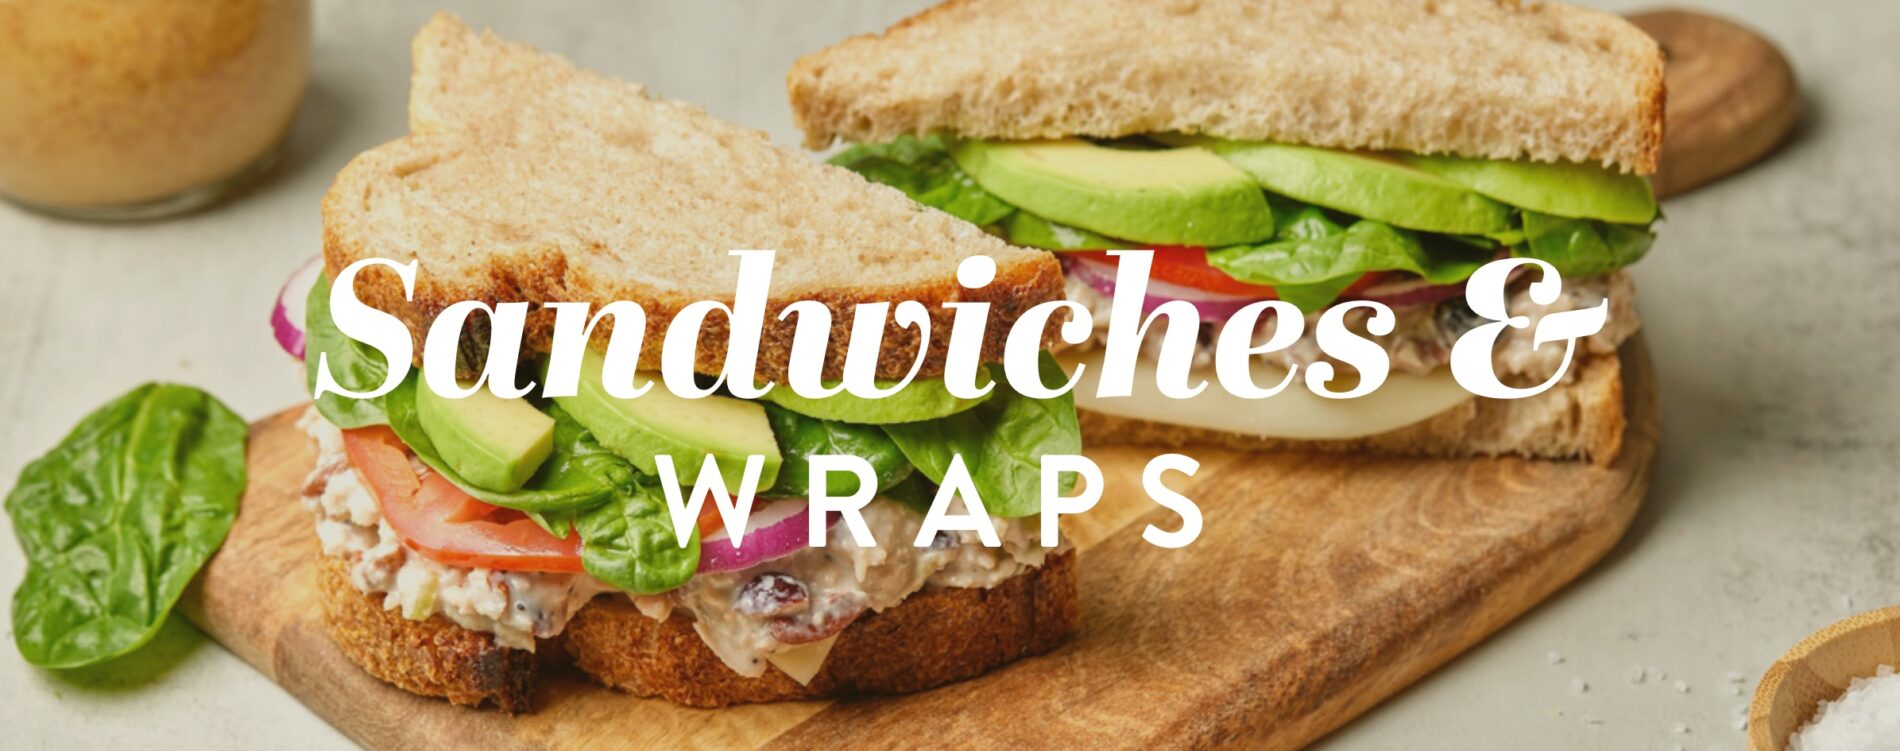 Sandwiches wraps 2